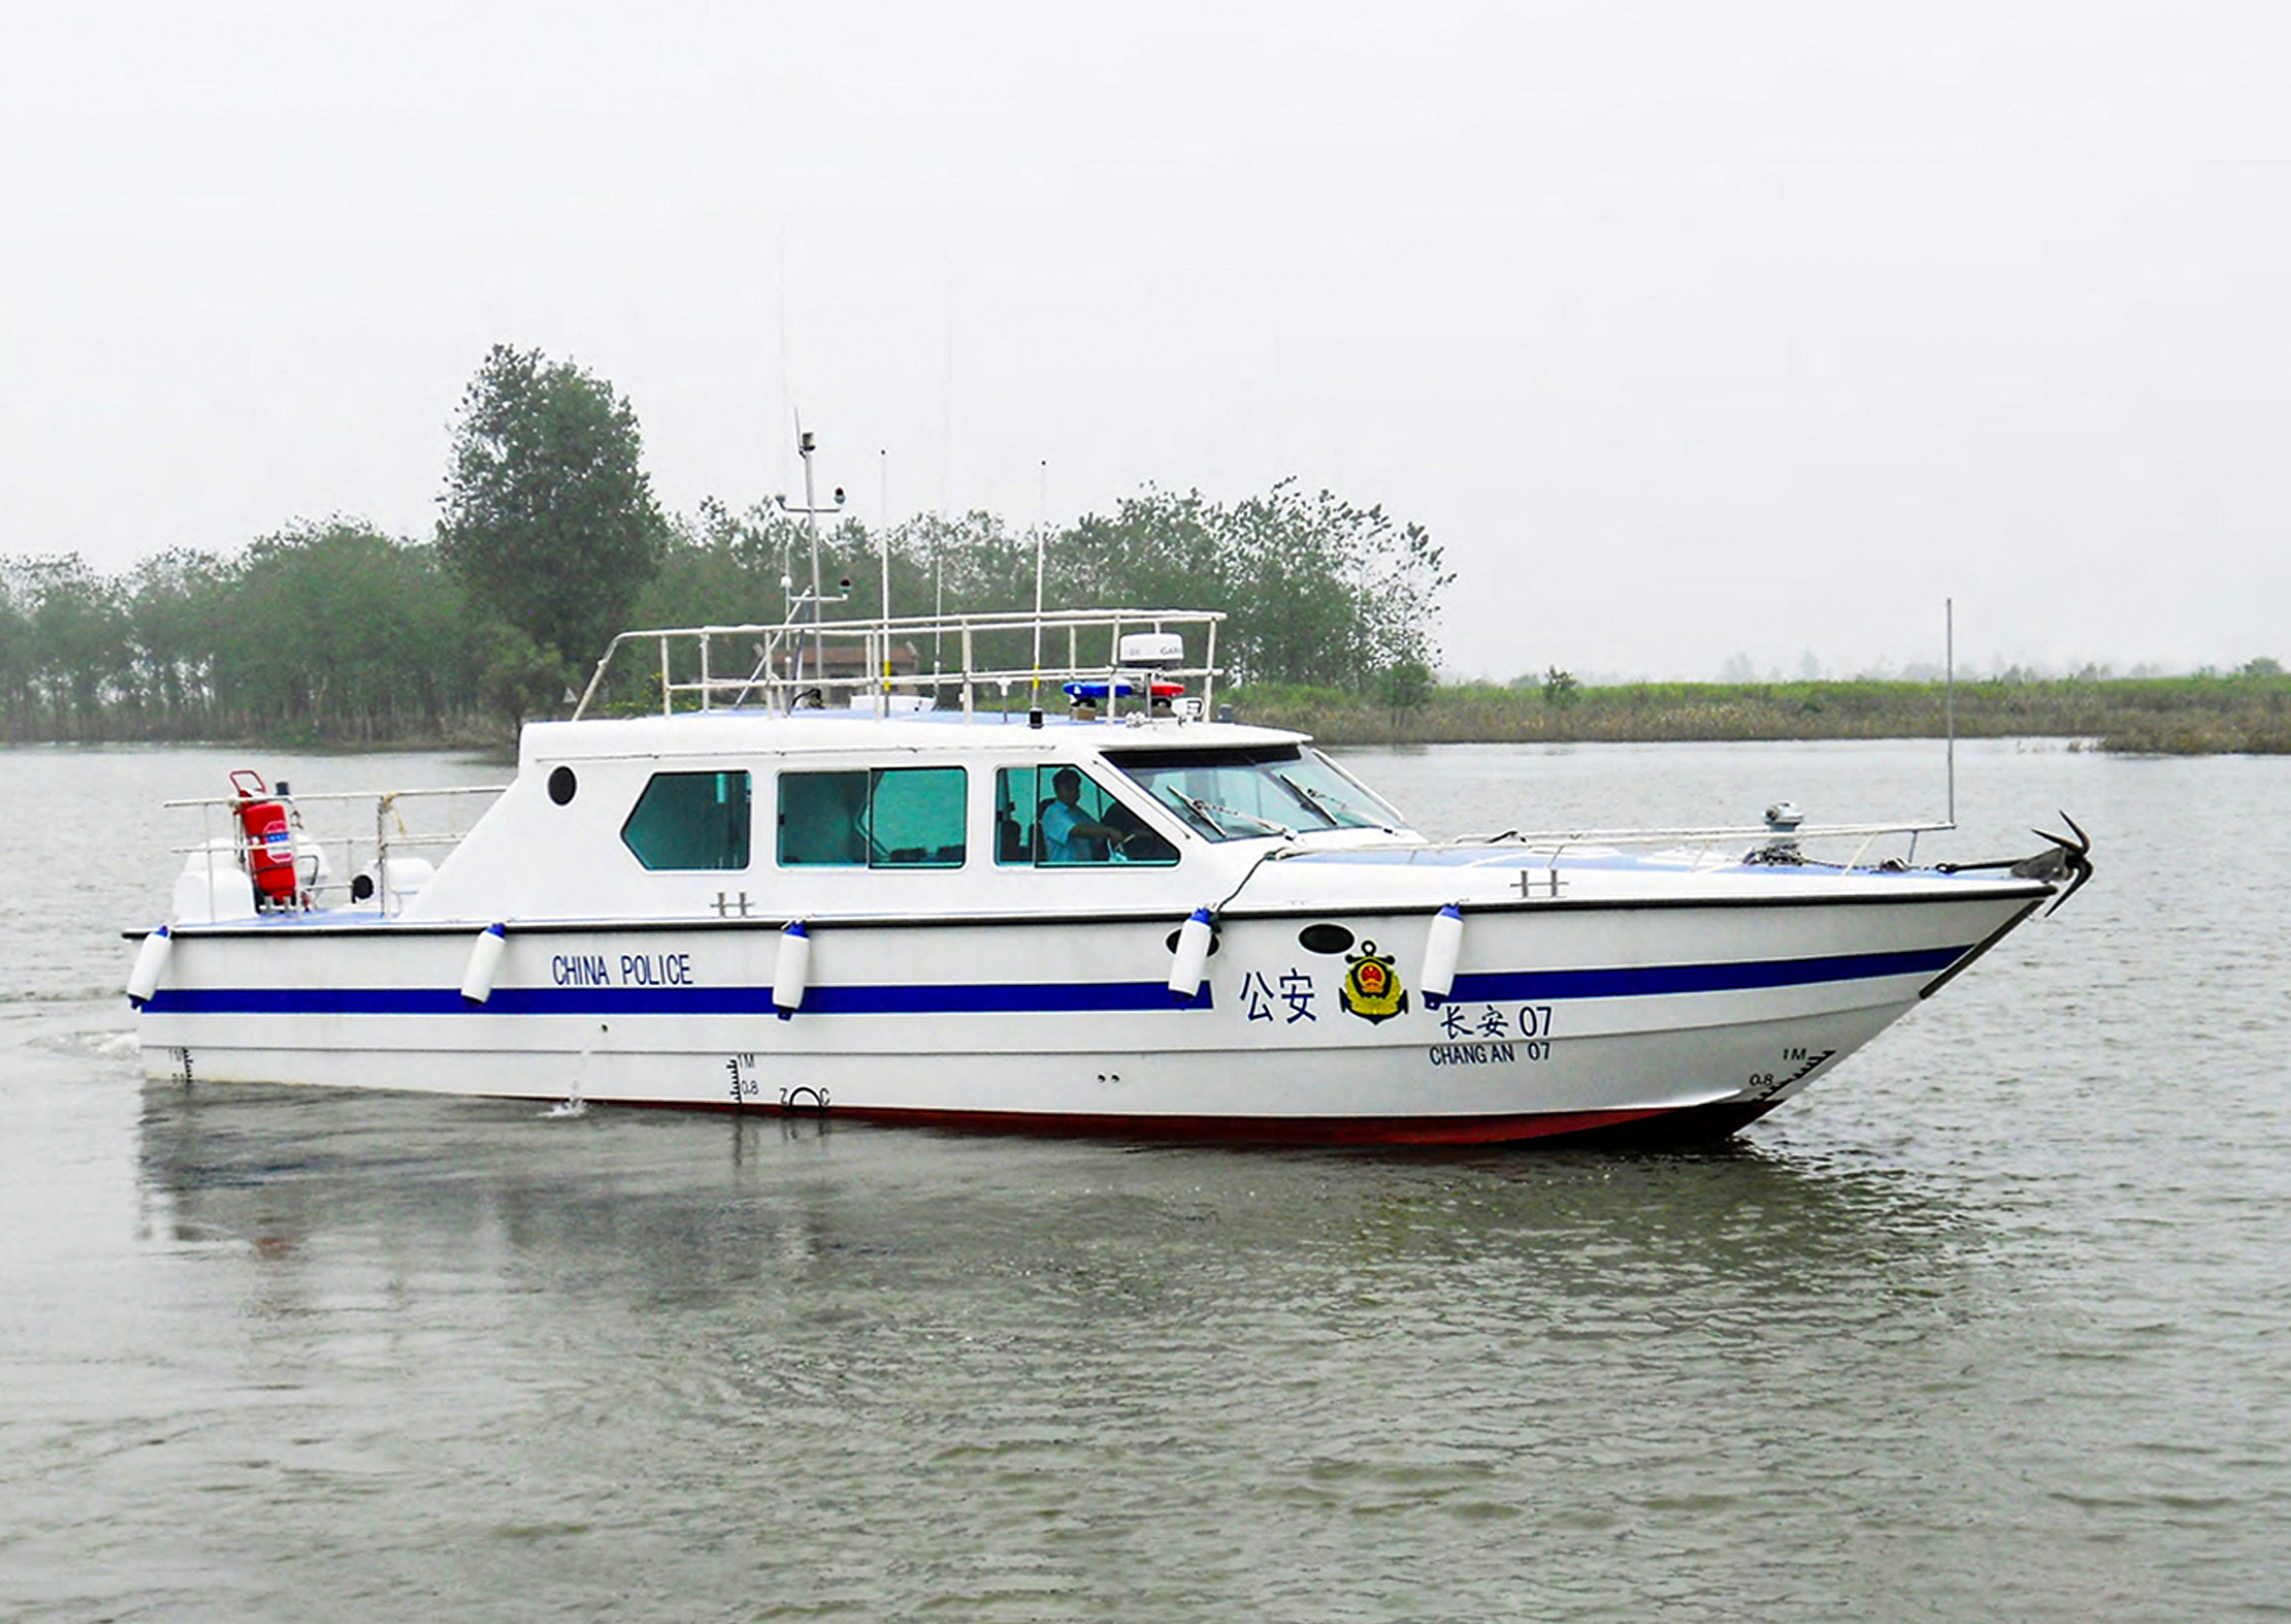 16m police boat